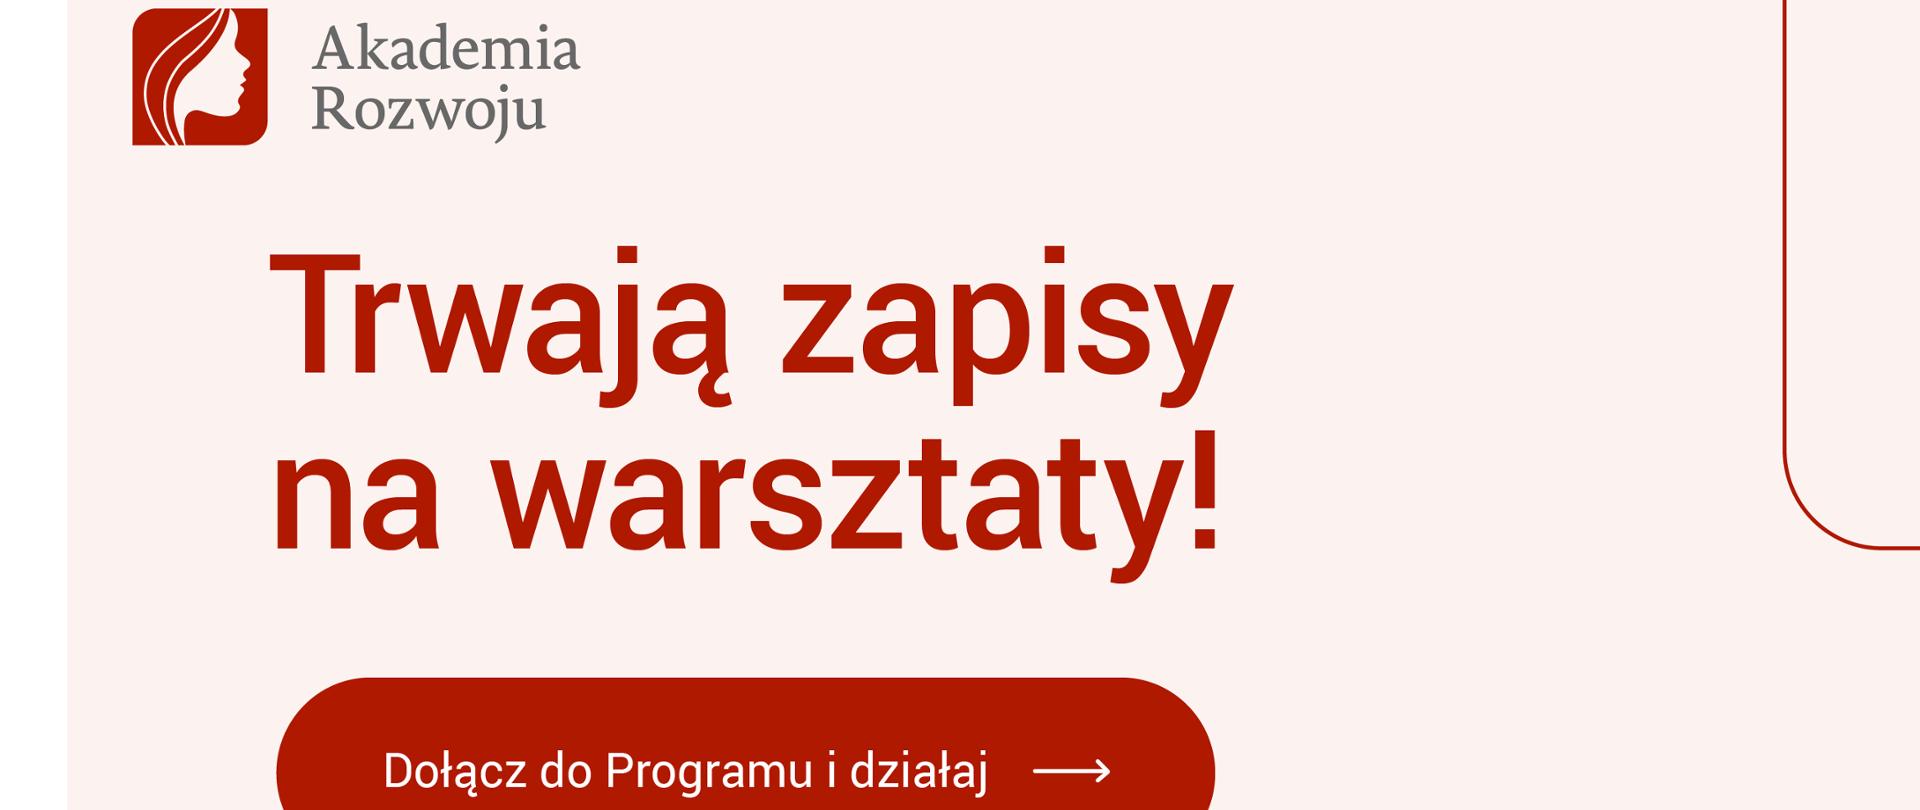 Banner reklamowy Akademii Rozwoju - Fundacja Polskiego Funduszu Rozwoju rozpoczyna nowy Program społeczno-rozwojowy dla kobiet
